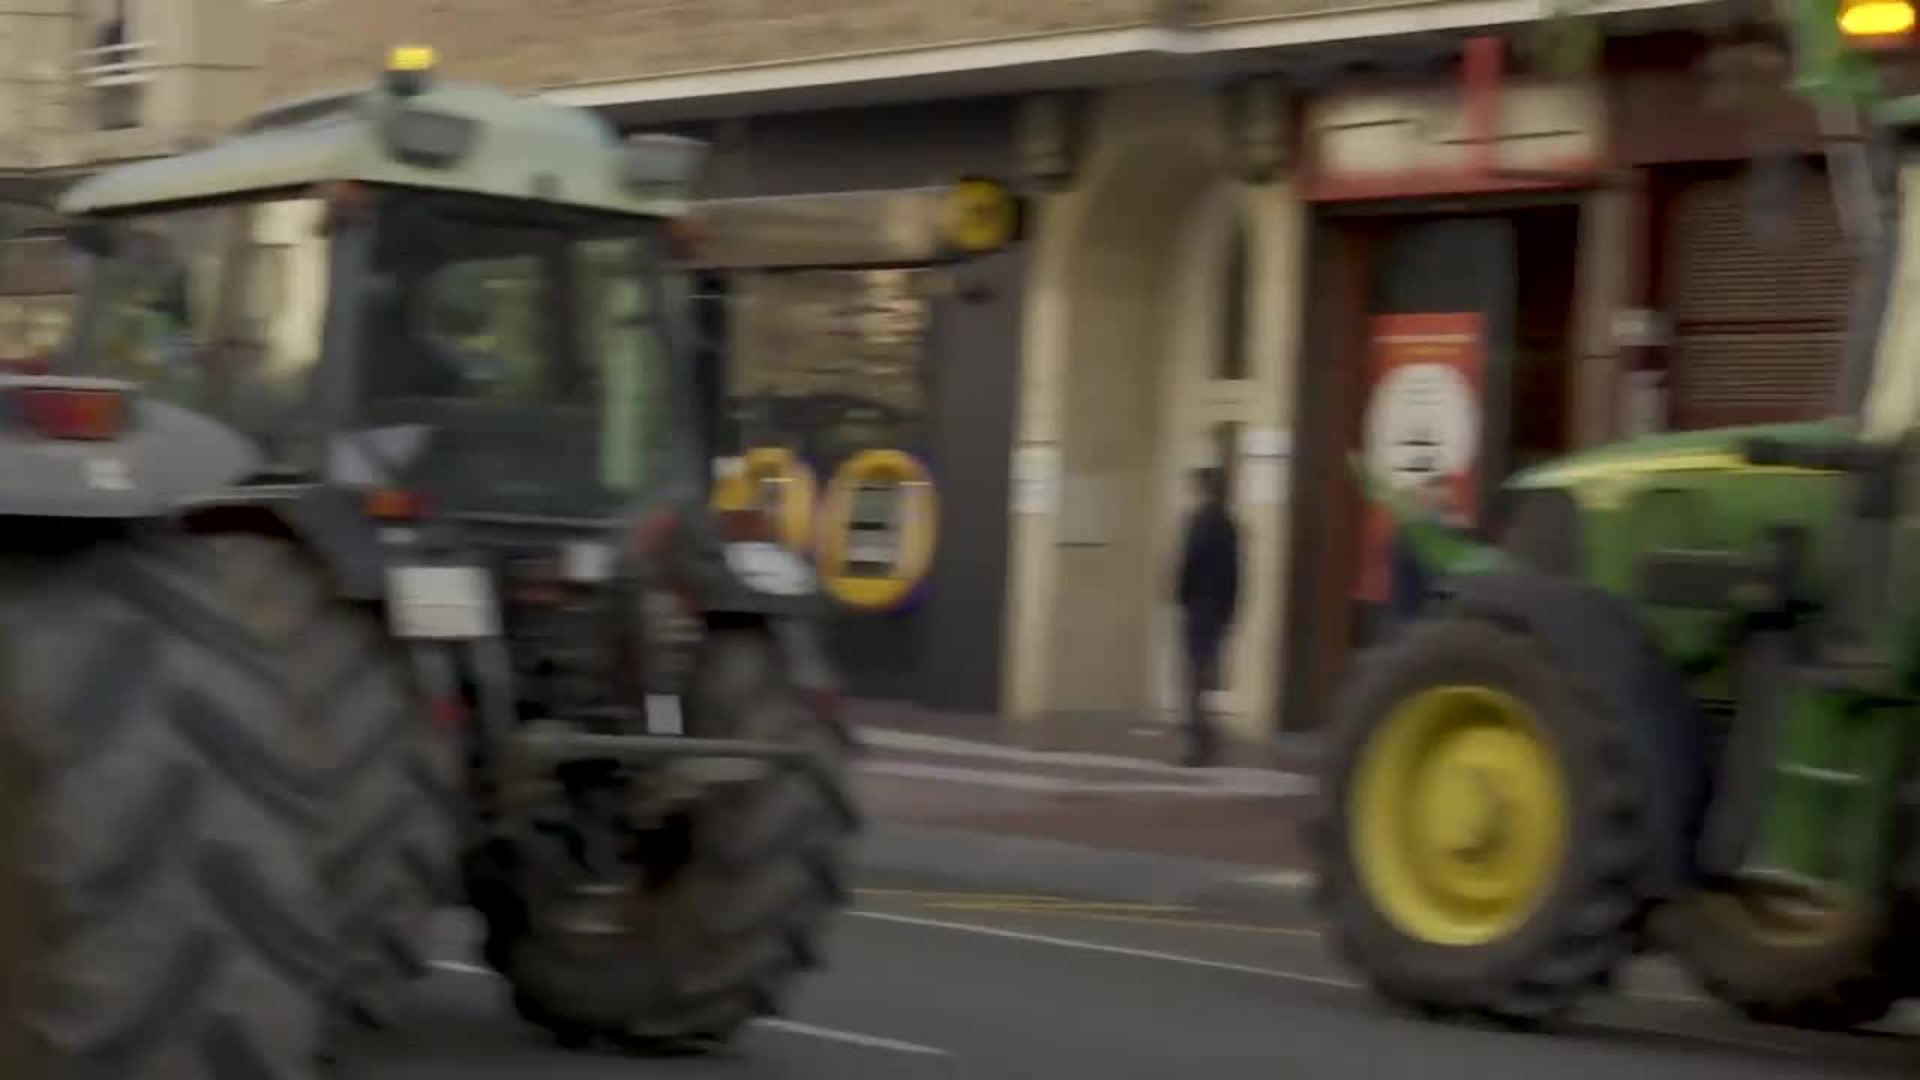 Una tractorada en Logroño denuncia la situación de agricultores y ganaderos